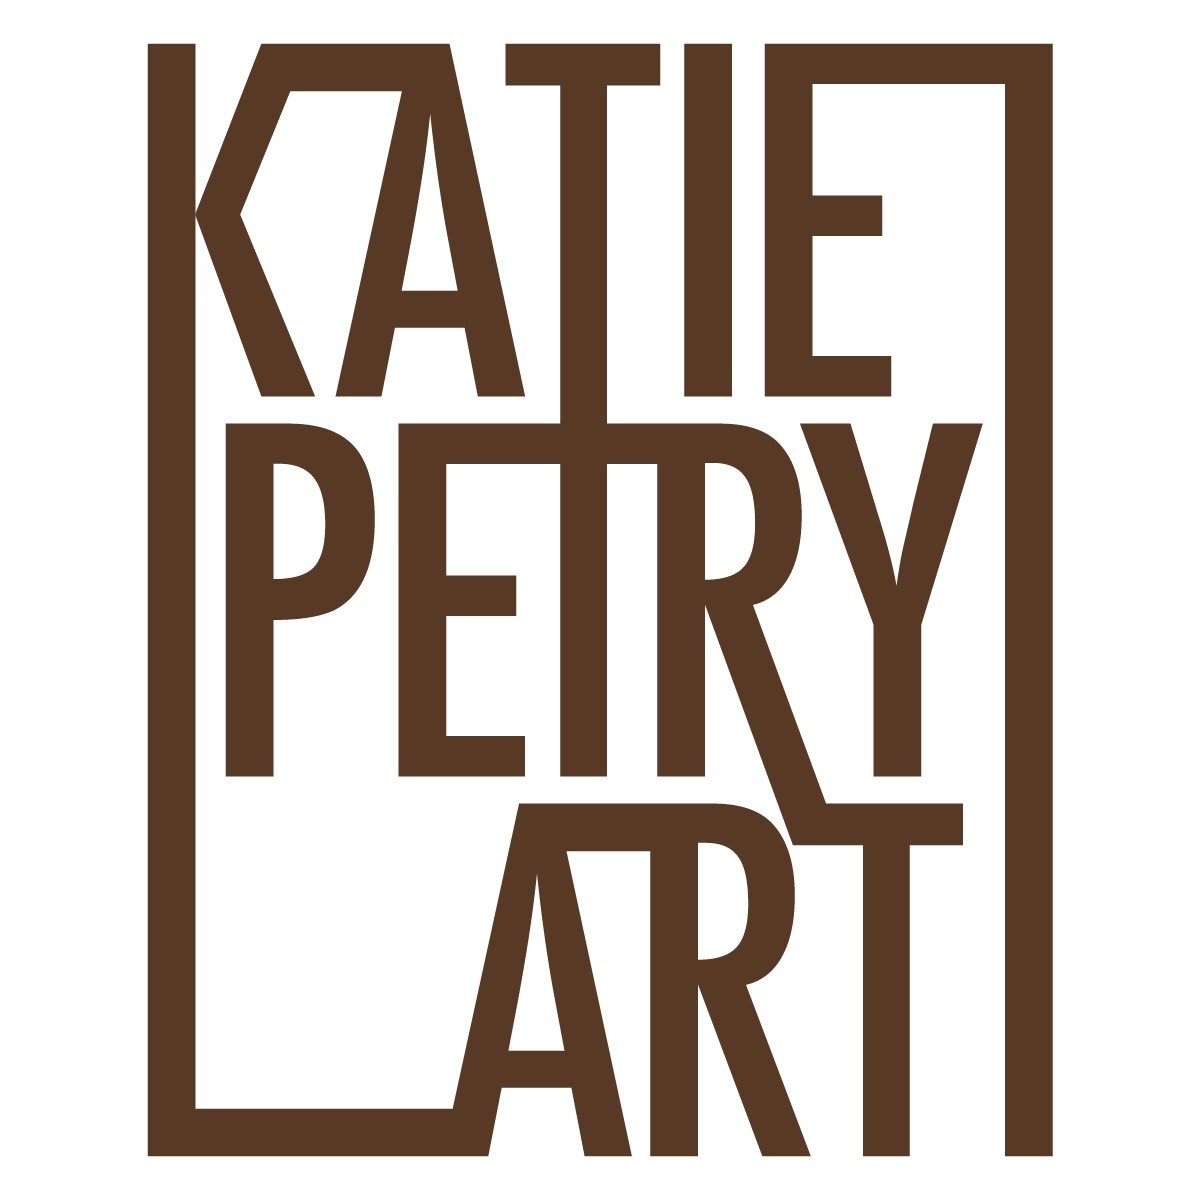 KATIE PETRY ART